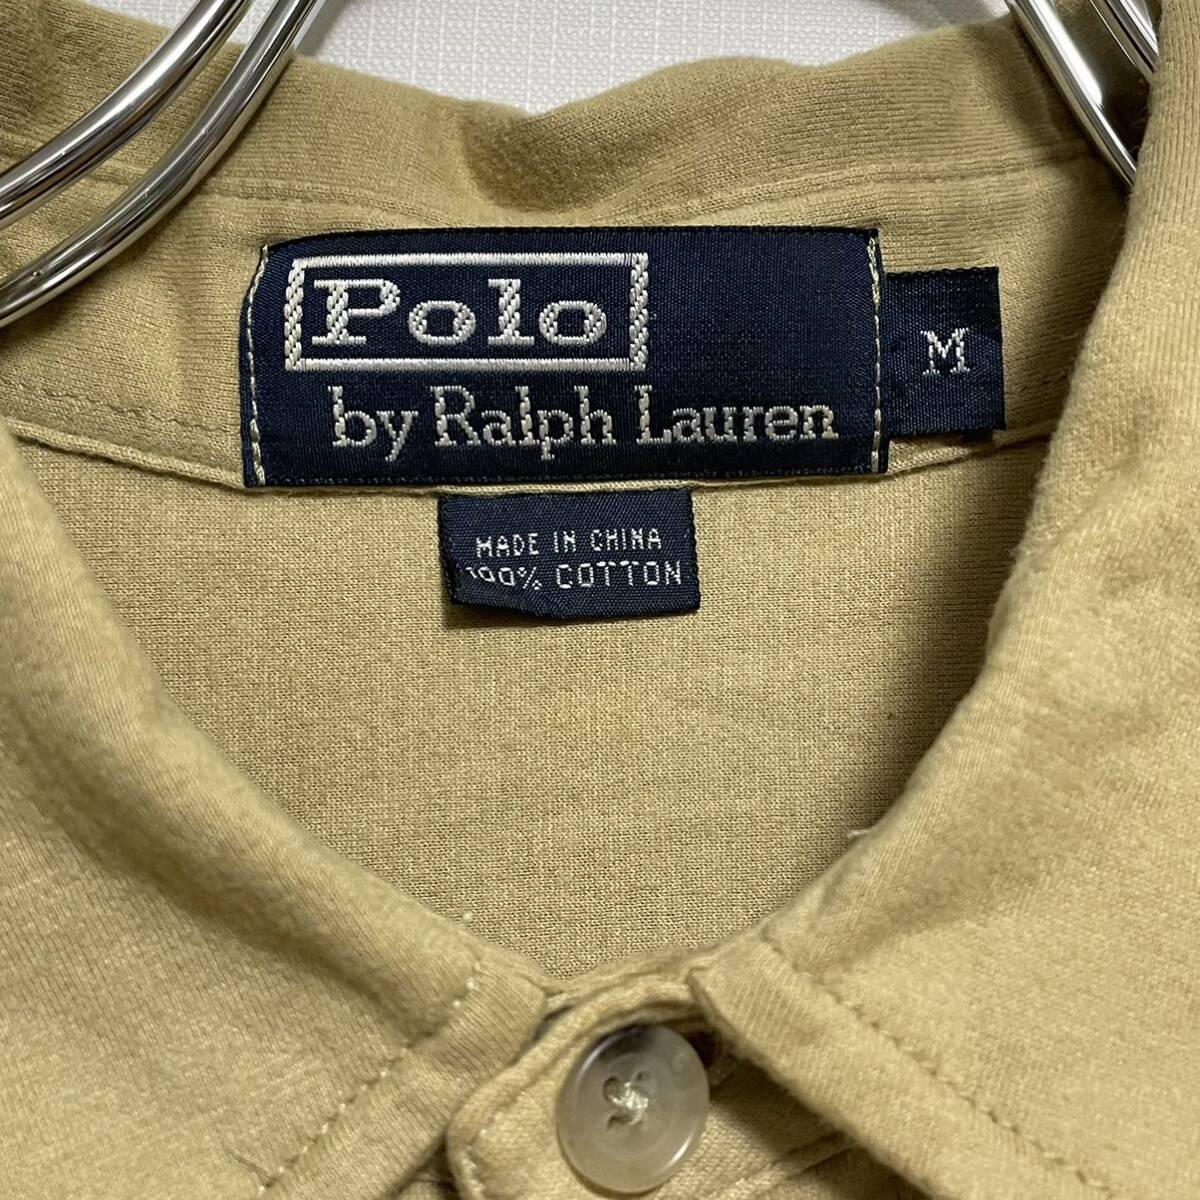 Polo by Ralph Lauren ポロバイラルフローレン メンズ 長袖Tシャツ Mサイズ 柔らかい 快適 カラシ色_画像3